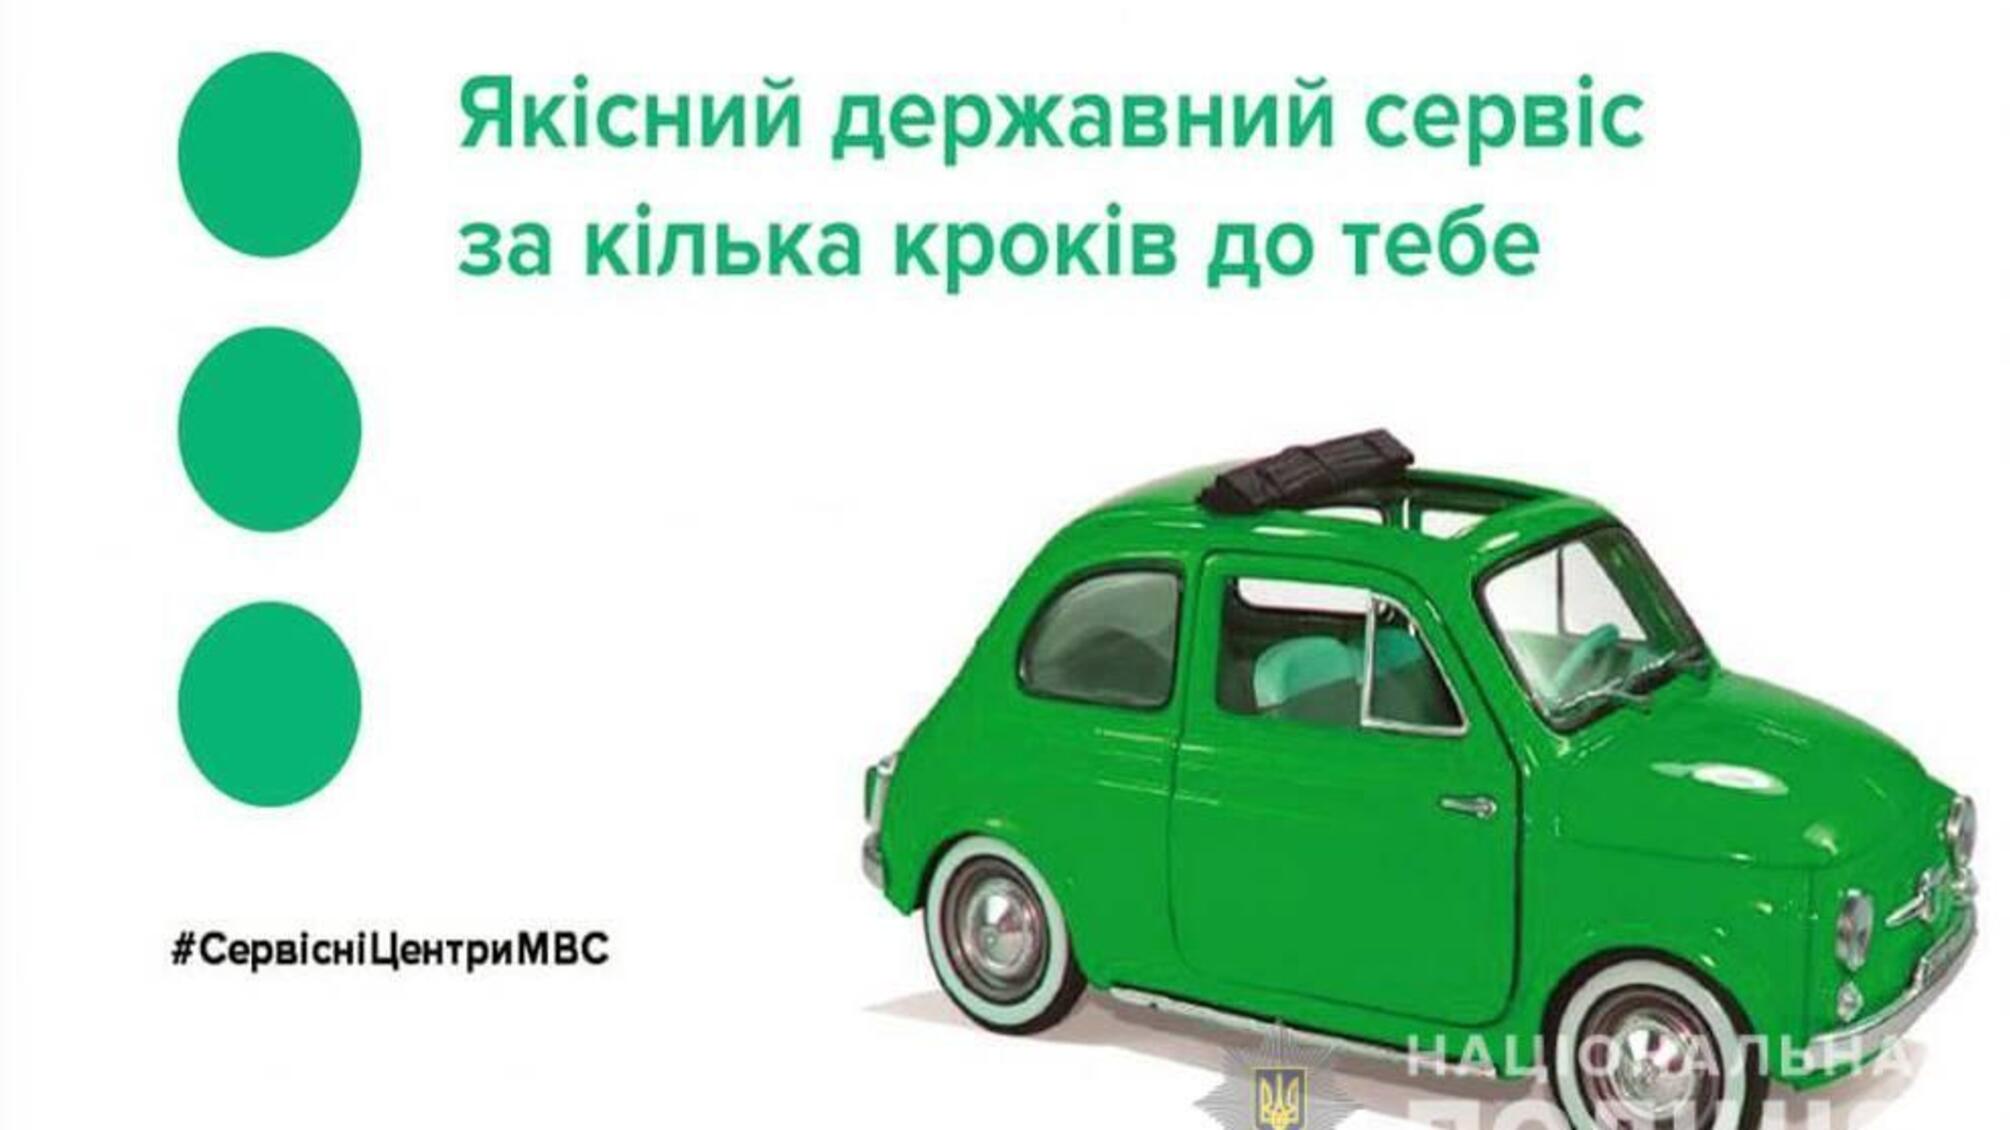 РСЦ МВС в Одеській області повідомляє: відтепер стати у чергу до сервісних центрів МВС для отримання послуг можна онлайн